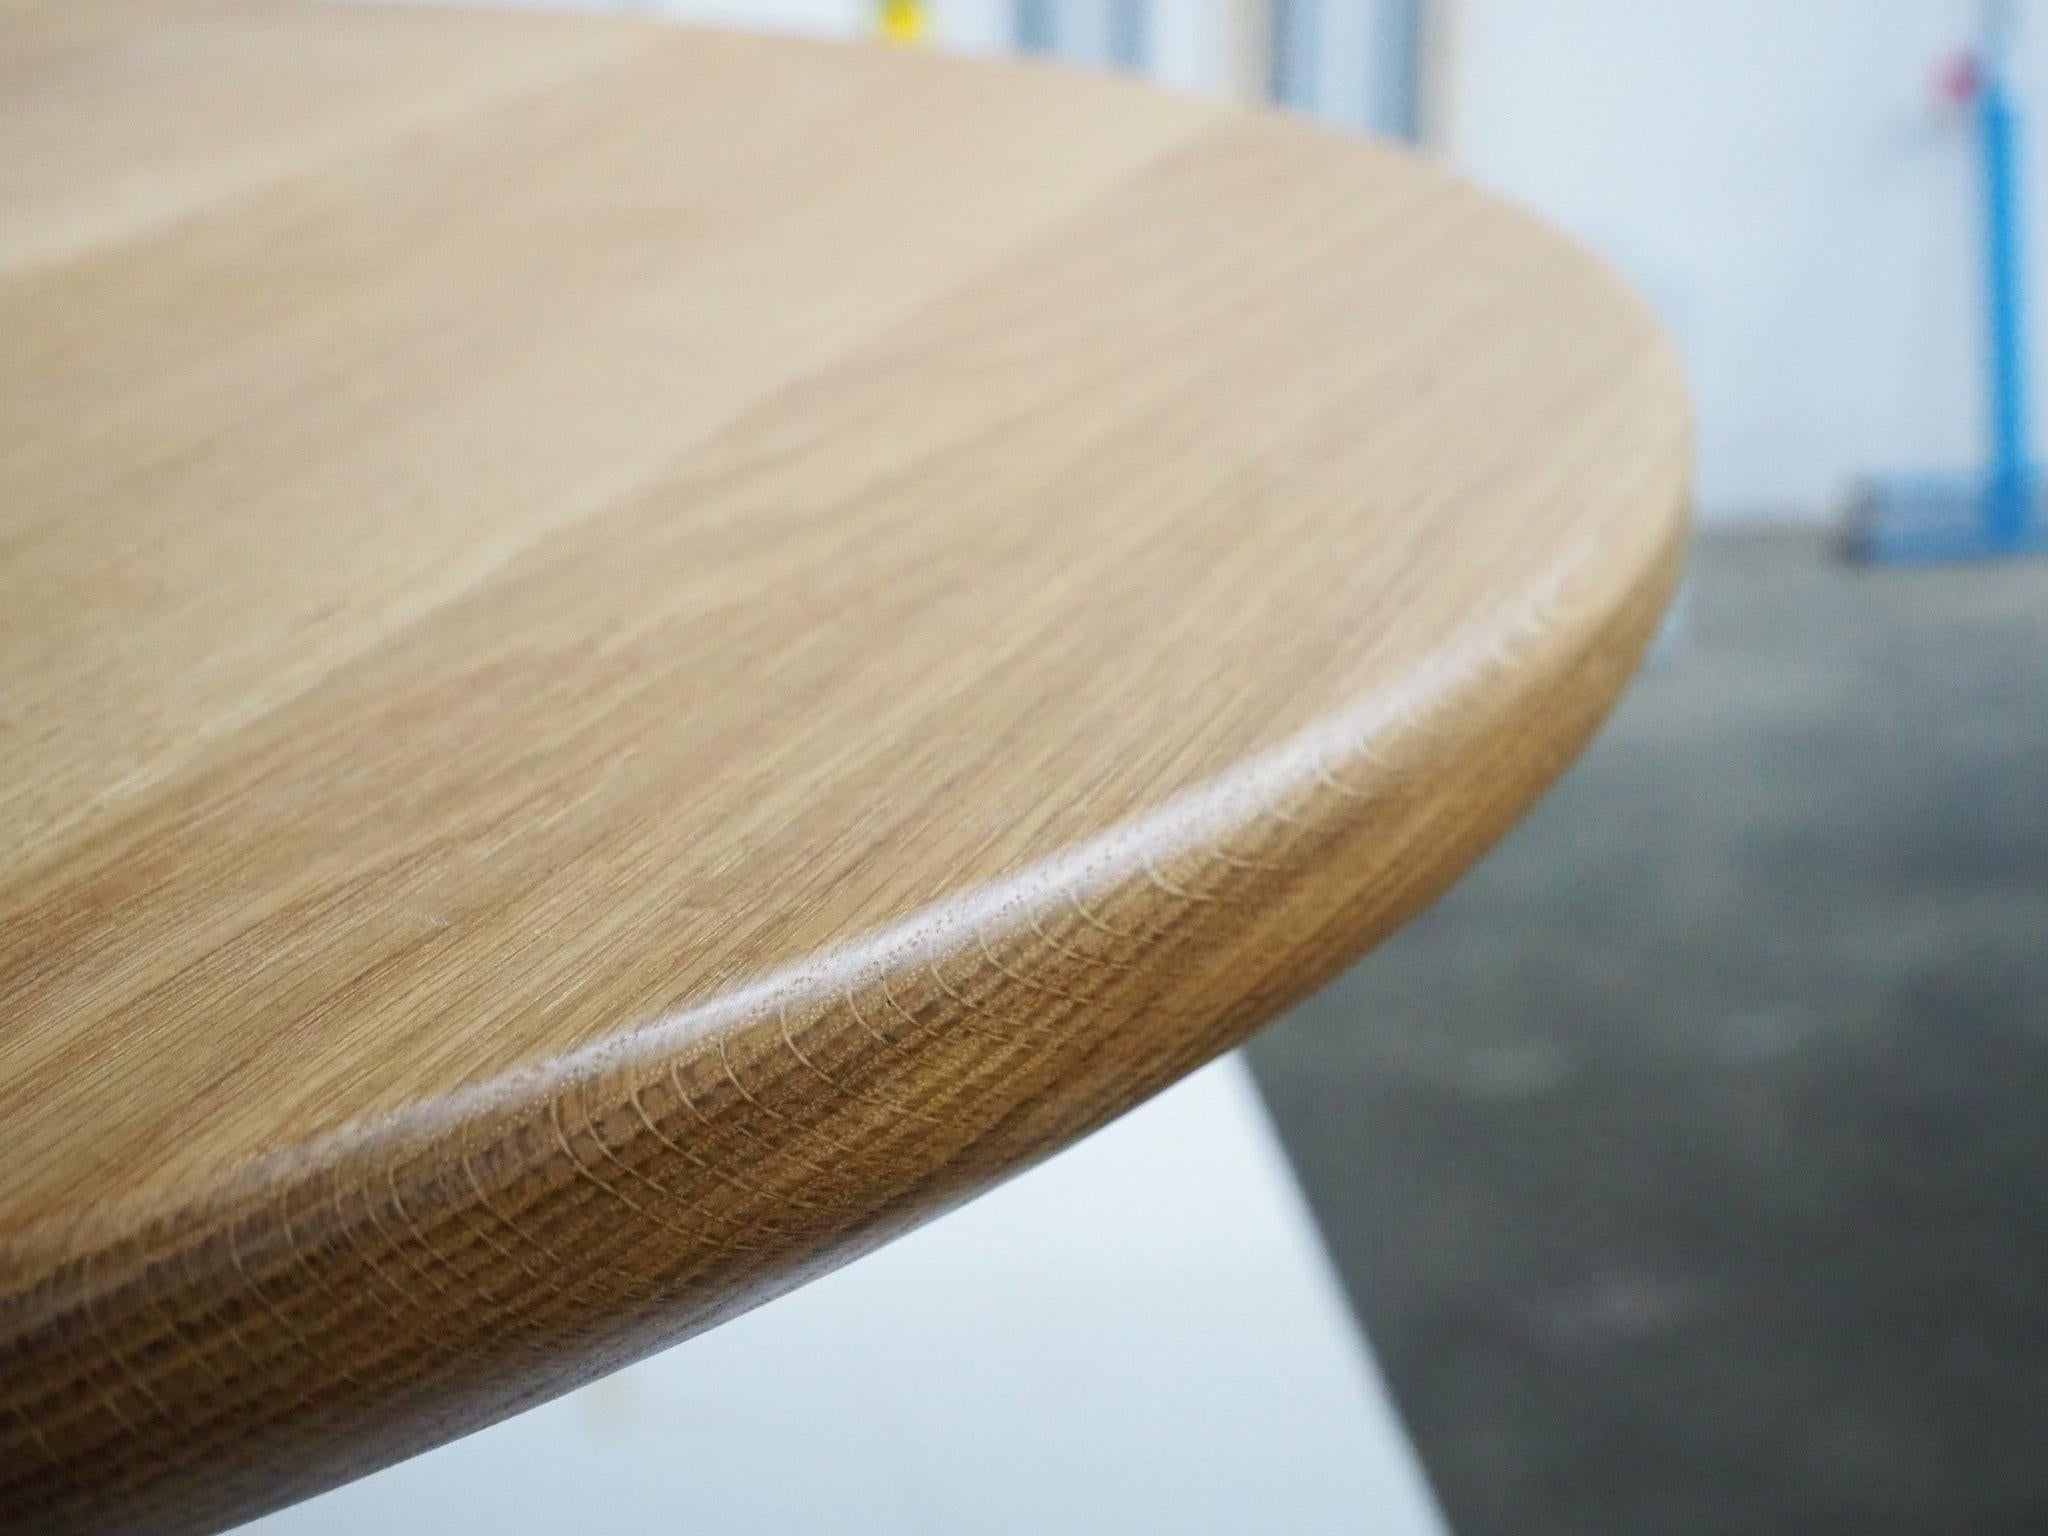 Als wir den Lutra-Tisch entwarfen, wollten wir einen Tisch schaffen, der Spaß macht, aber auch anspruchsvoll ist und dennoch ein eher minimalistisches Design hat. Wir glauben, dass wir das in diesem Stück erreicht haben. 

Er hat eine runde